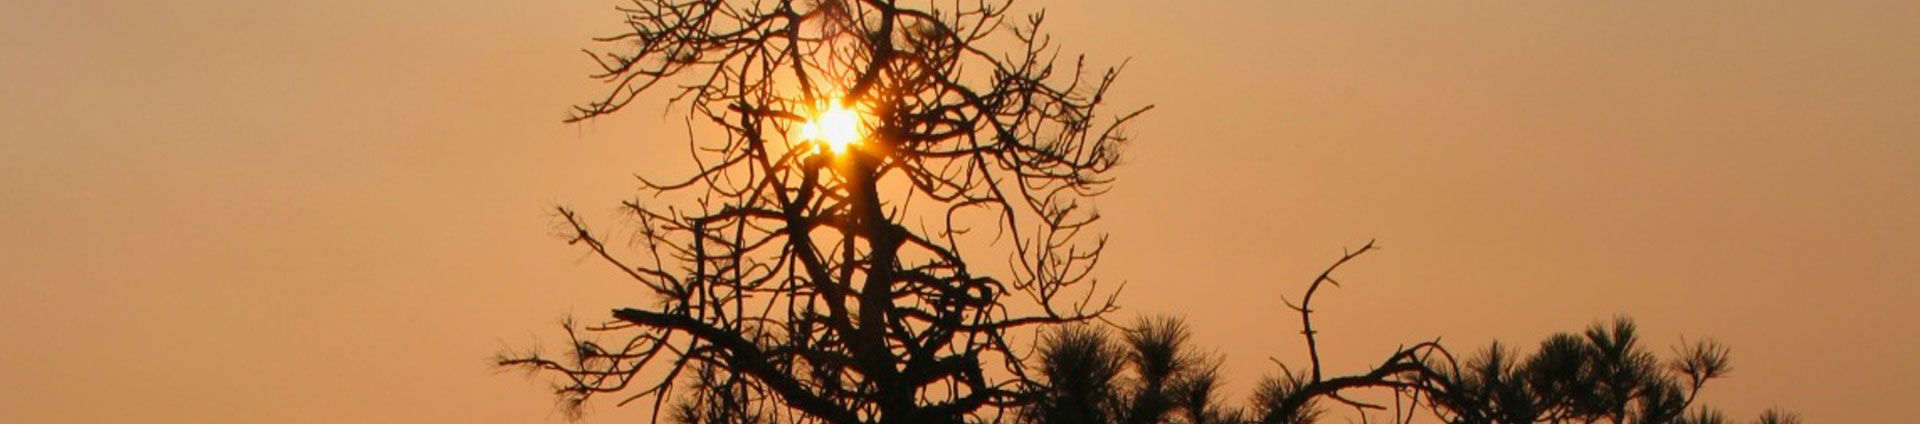 imagen de cabecera de sol brillando a través de árbol en el humo